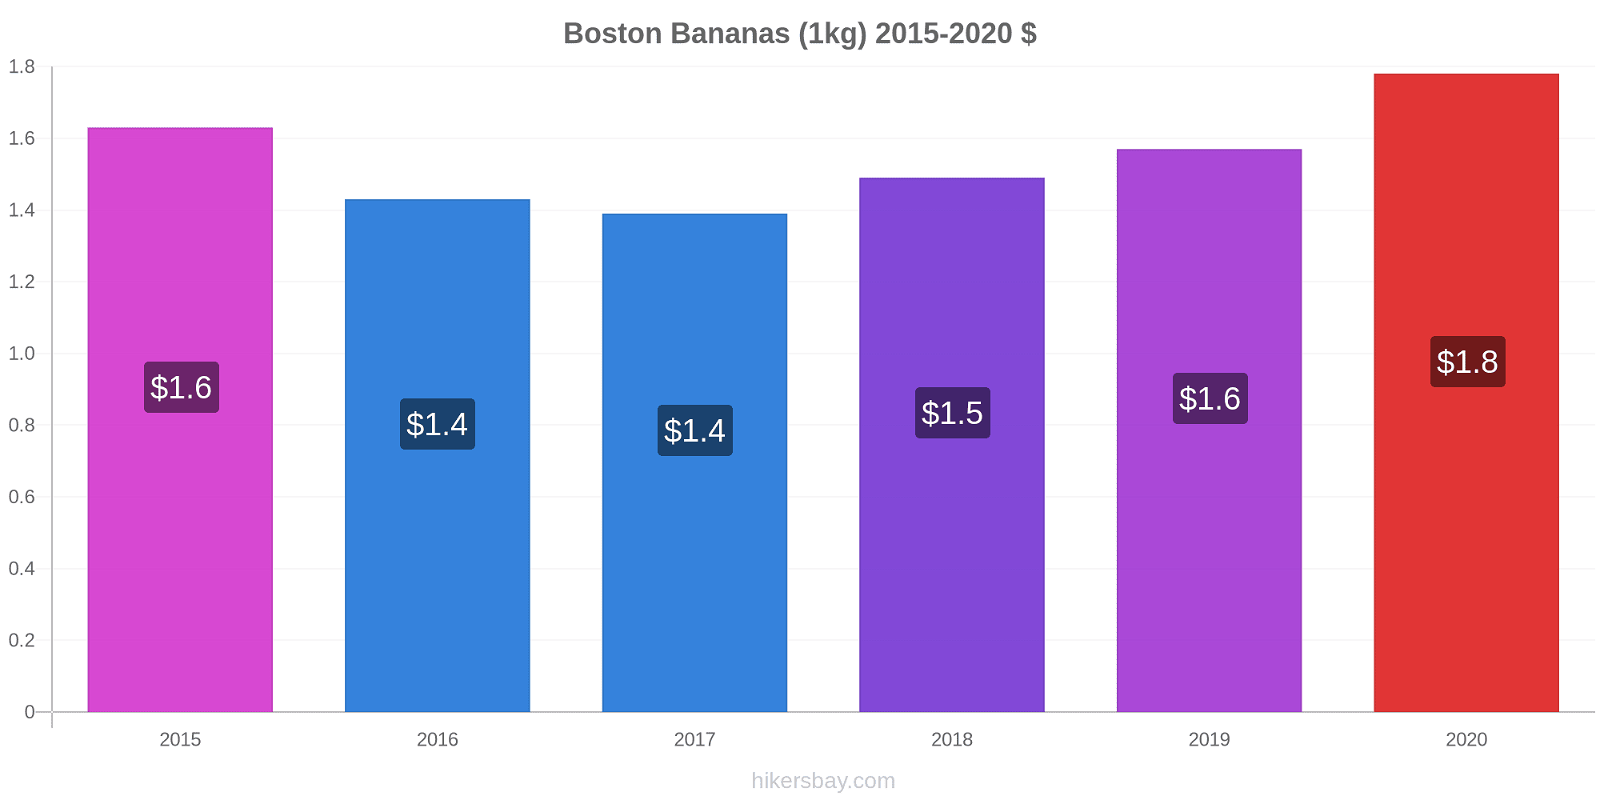 Boston variação de preço Banana (1kg) hikersbay.com